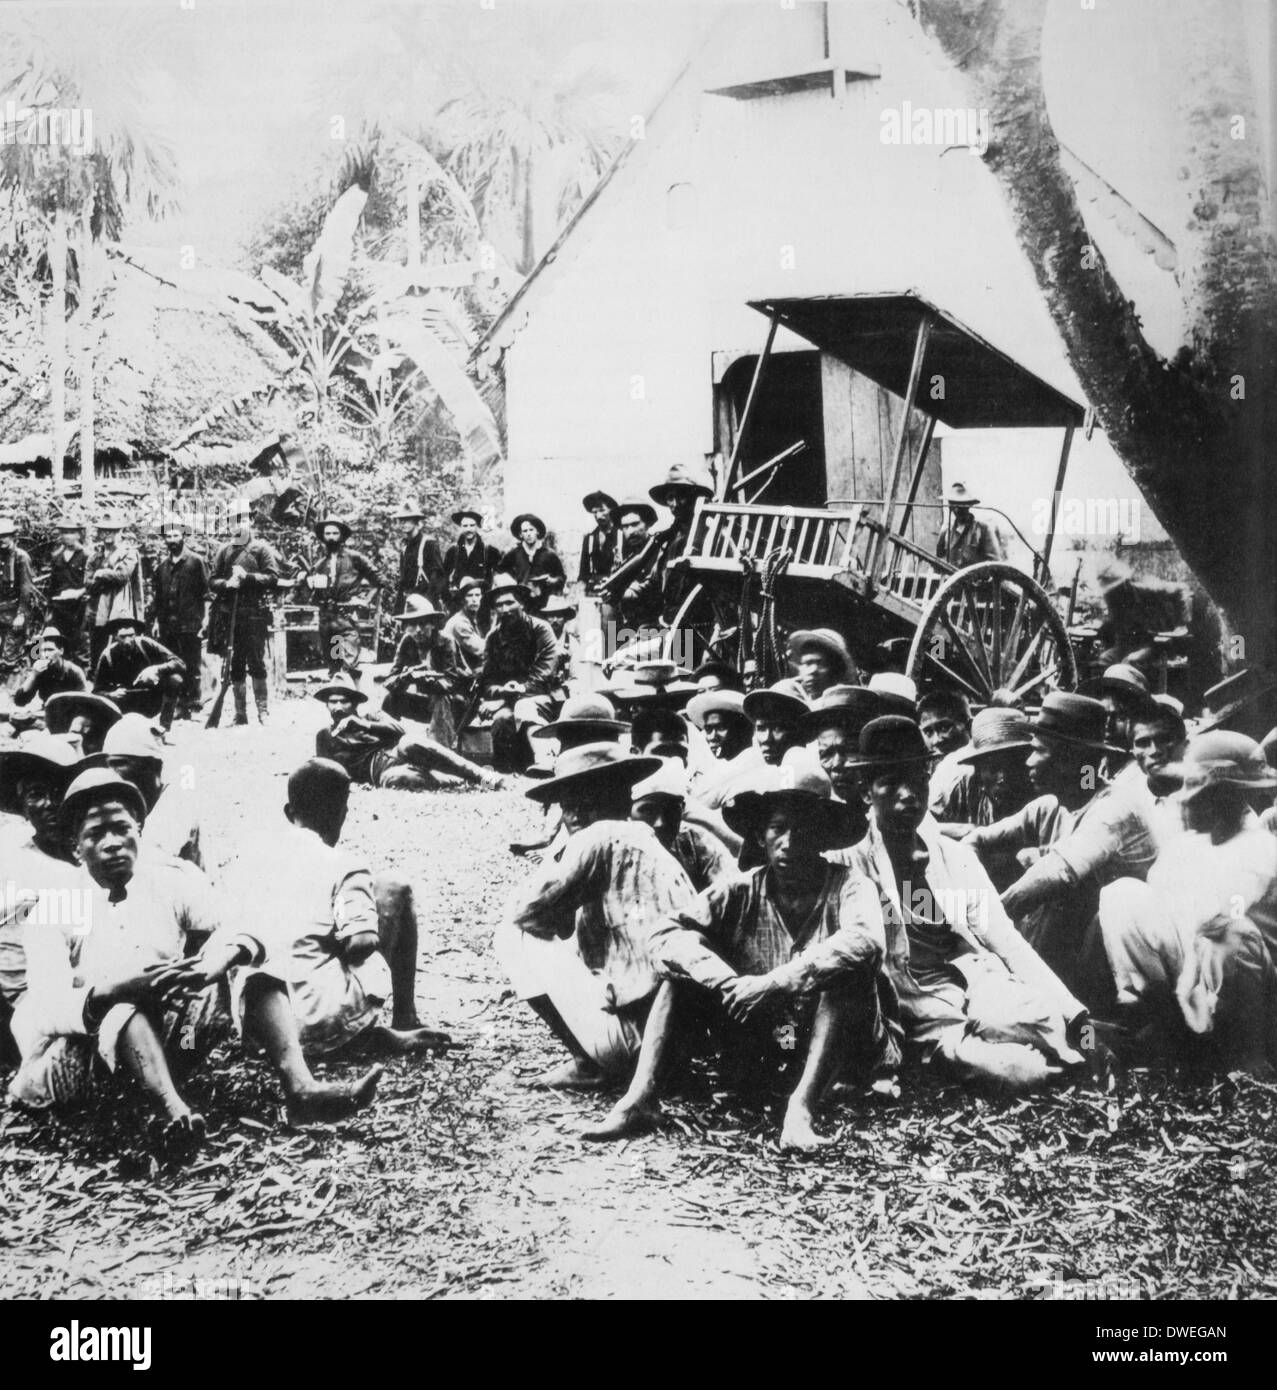 Insurgés philippins capturés par les troupes américaines, Philippines, vers 1900 Banque D'Images